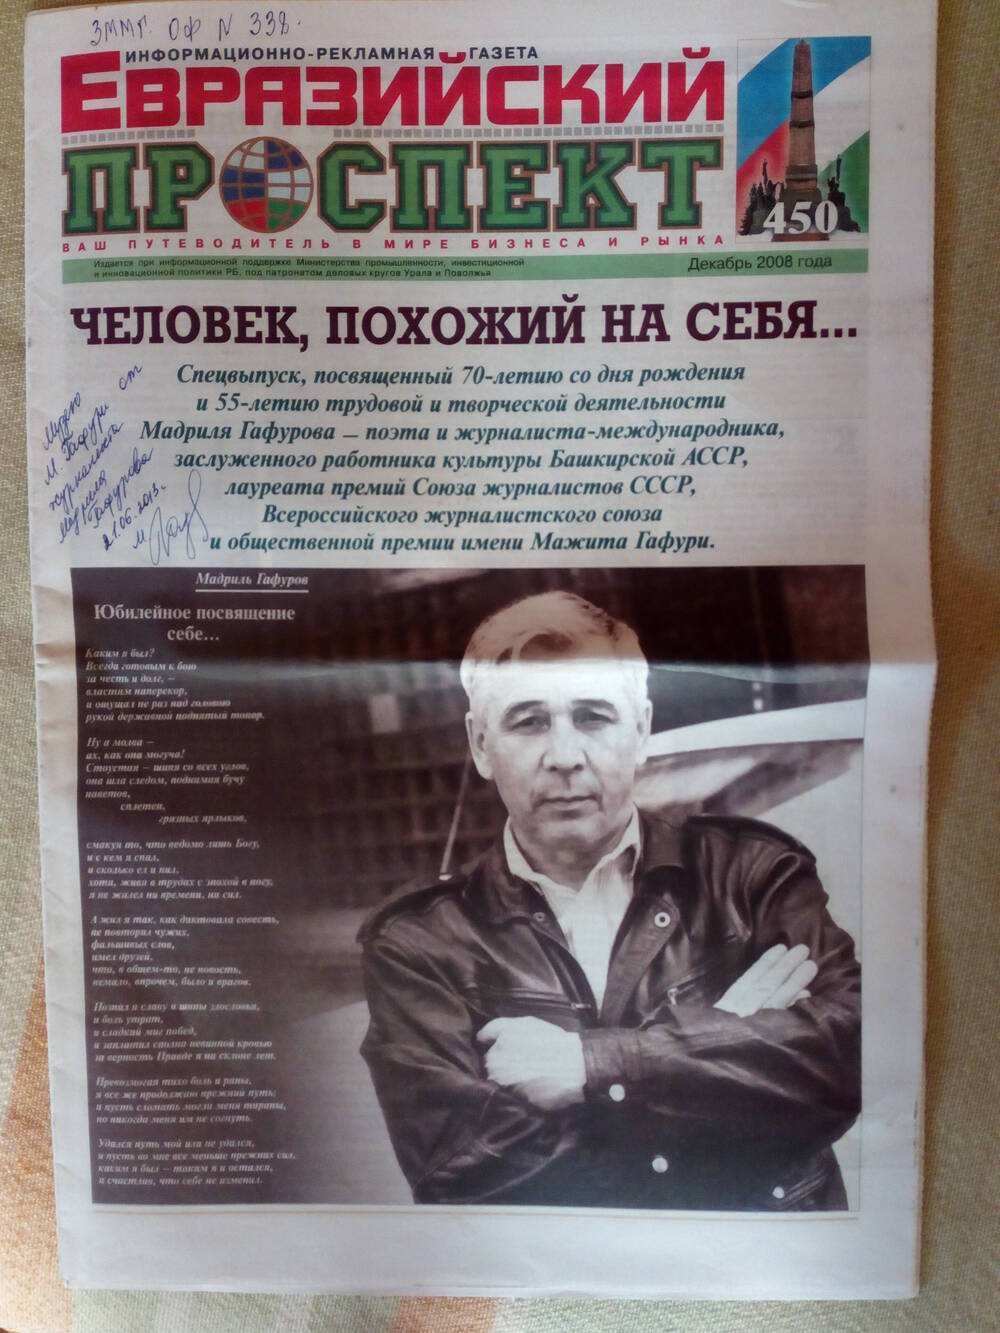 Информационно-рекламная газета Евразийский проспект,декабрь 2008 г.